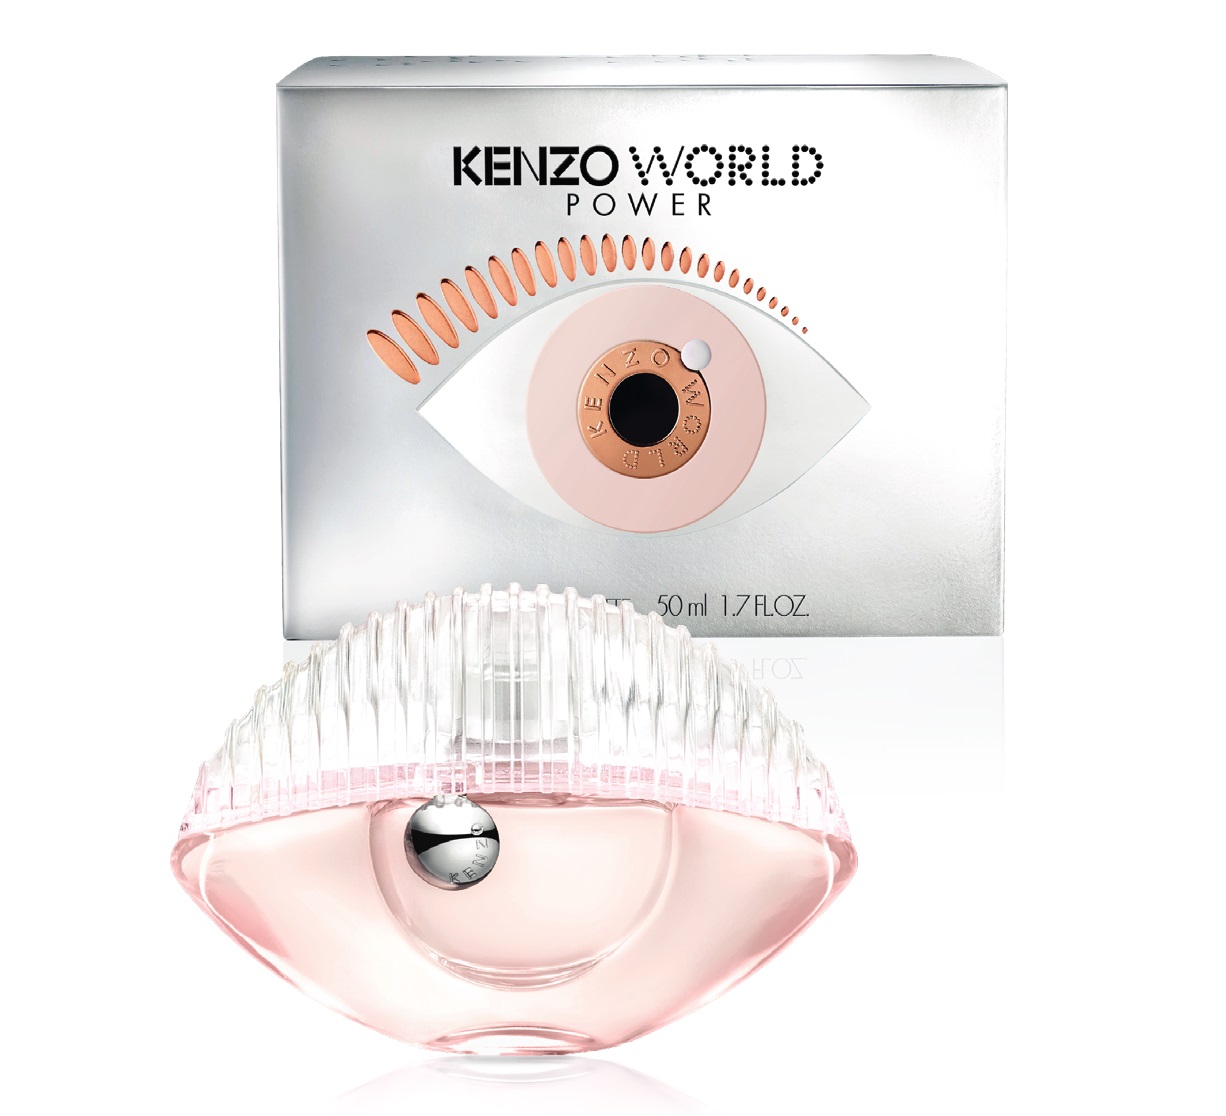 Kenzo Kenzo World Power Eau De Toilette